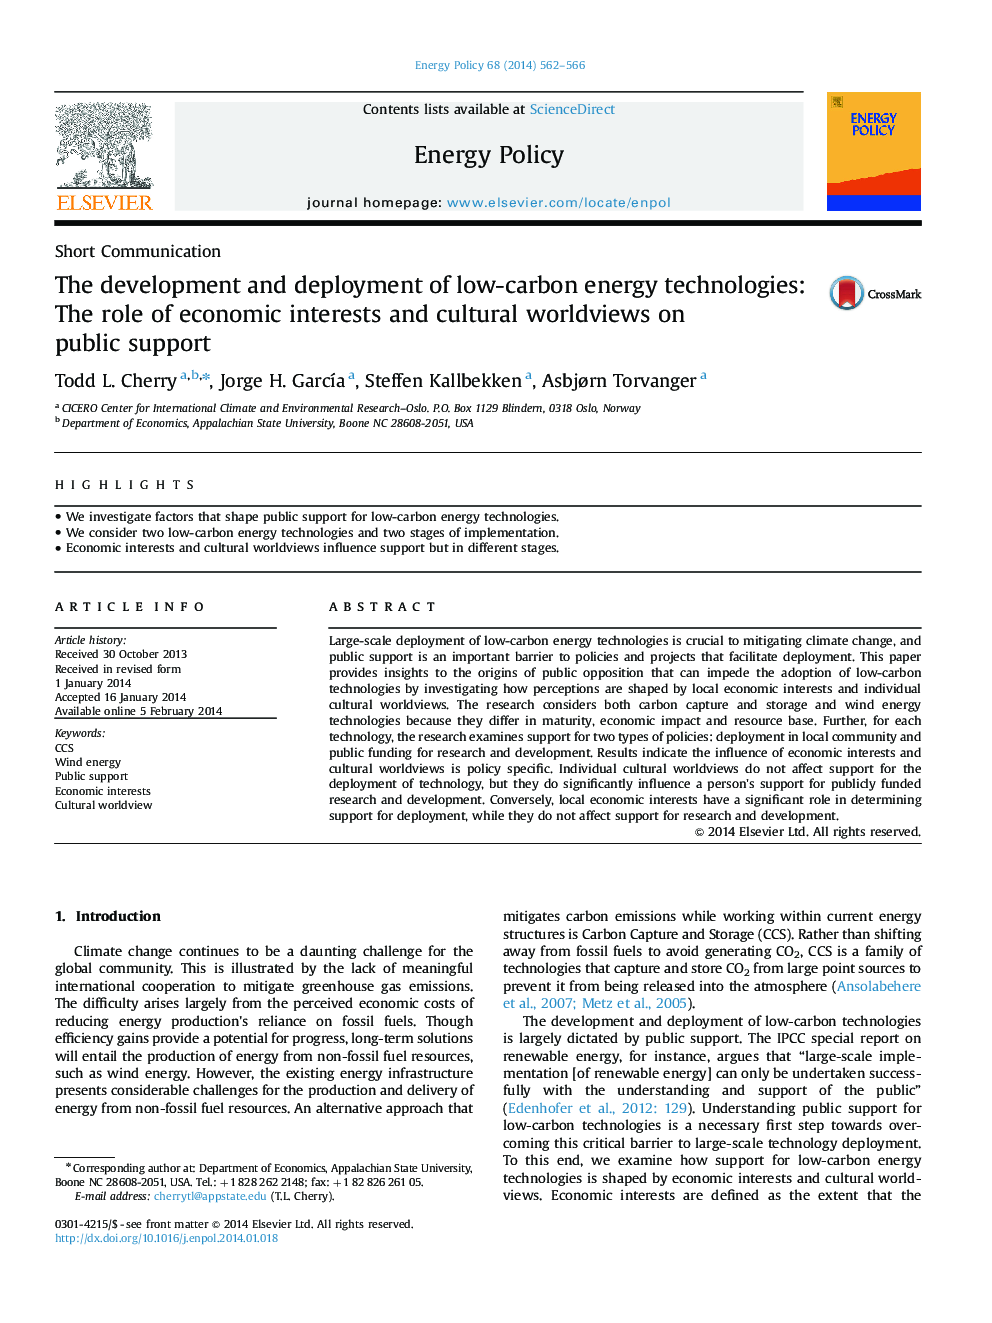 توسعه و گسترش تکنولوژی های انرژی کم کربن: نقش منافع اقتصادی و جهان بینی های فرهنگی بر حمایت عمومی 